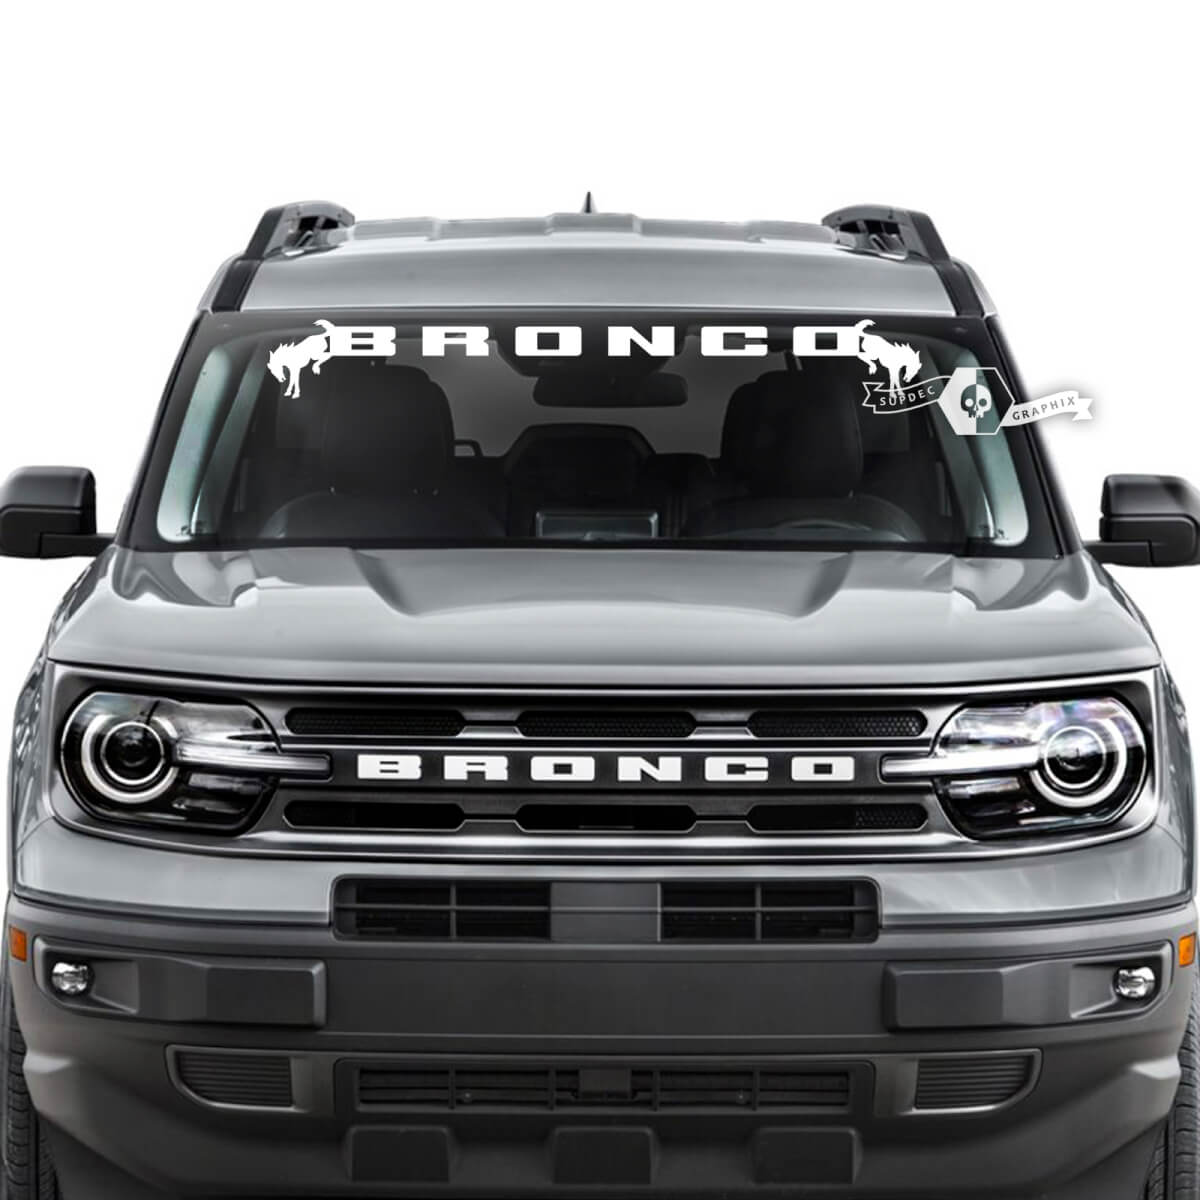 Ford Bronco Fenster-Windschutzscheiben-Logo-Streifen, Vinyl-Grafikaufkleber
